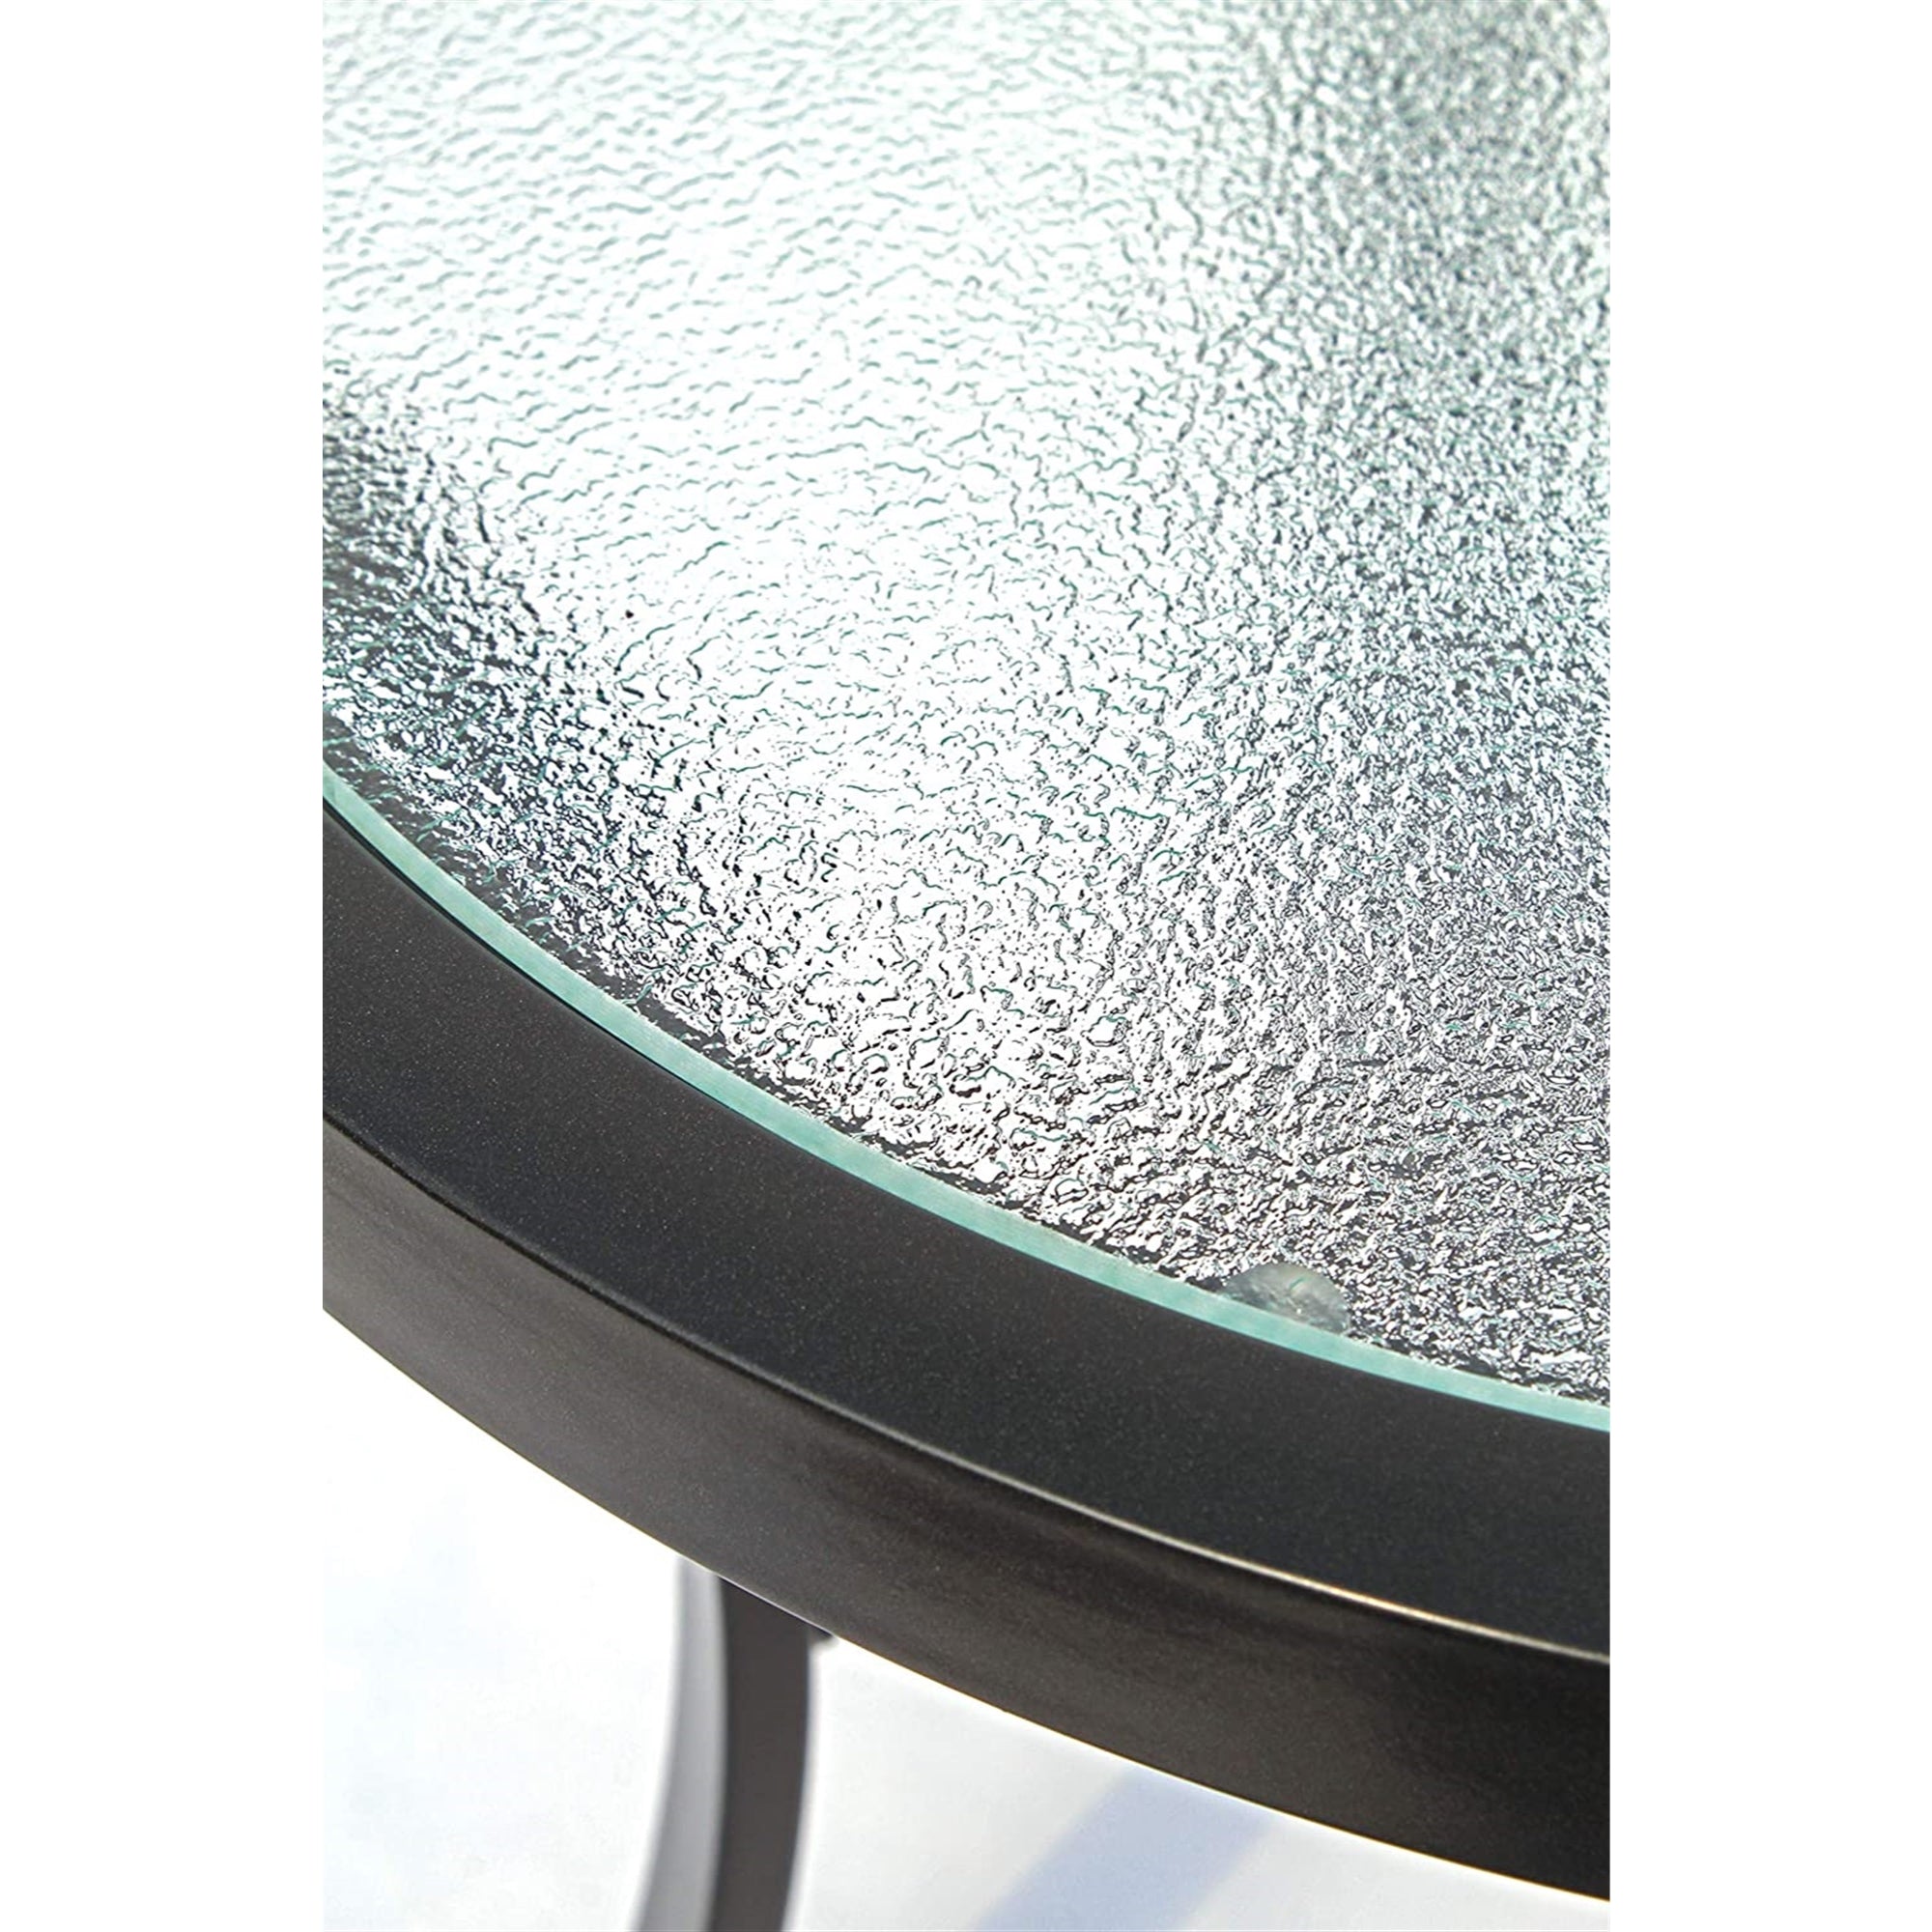 Garden Elements Bellevue Aluminum Rim 40" Round Glass Top Dining Table, Dark Taupe